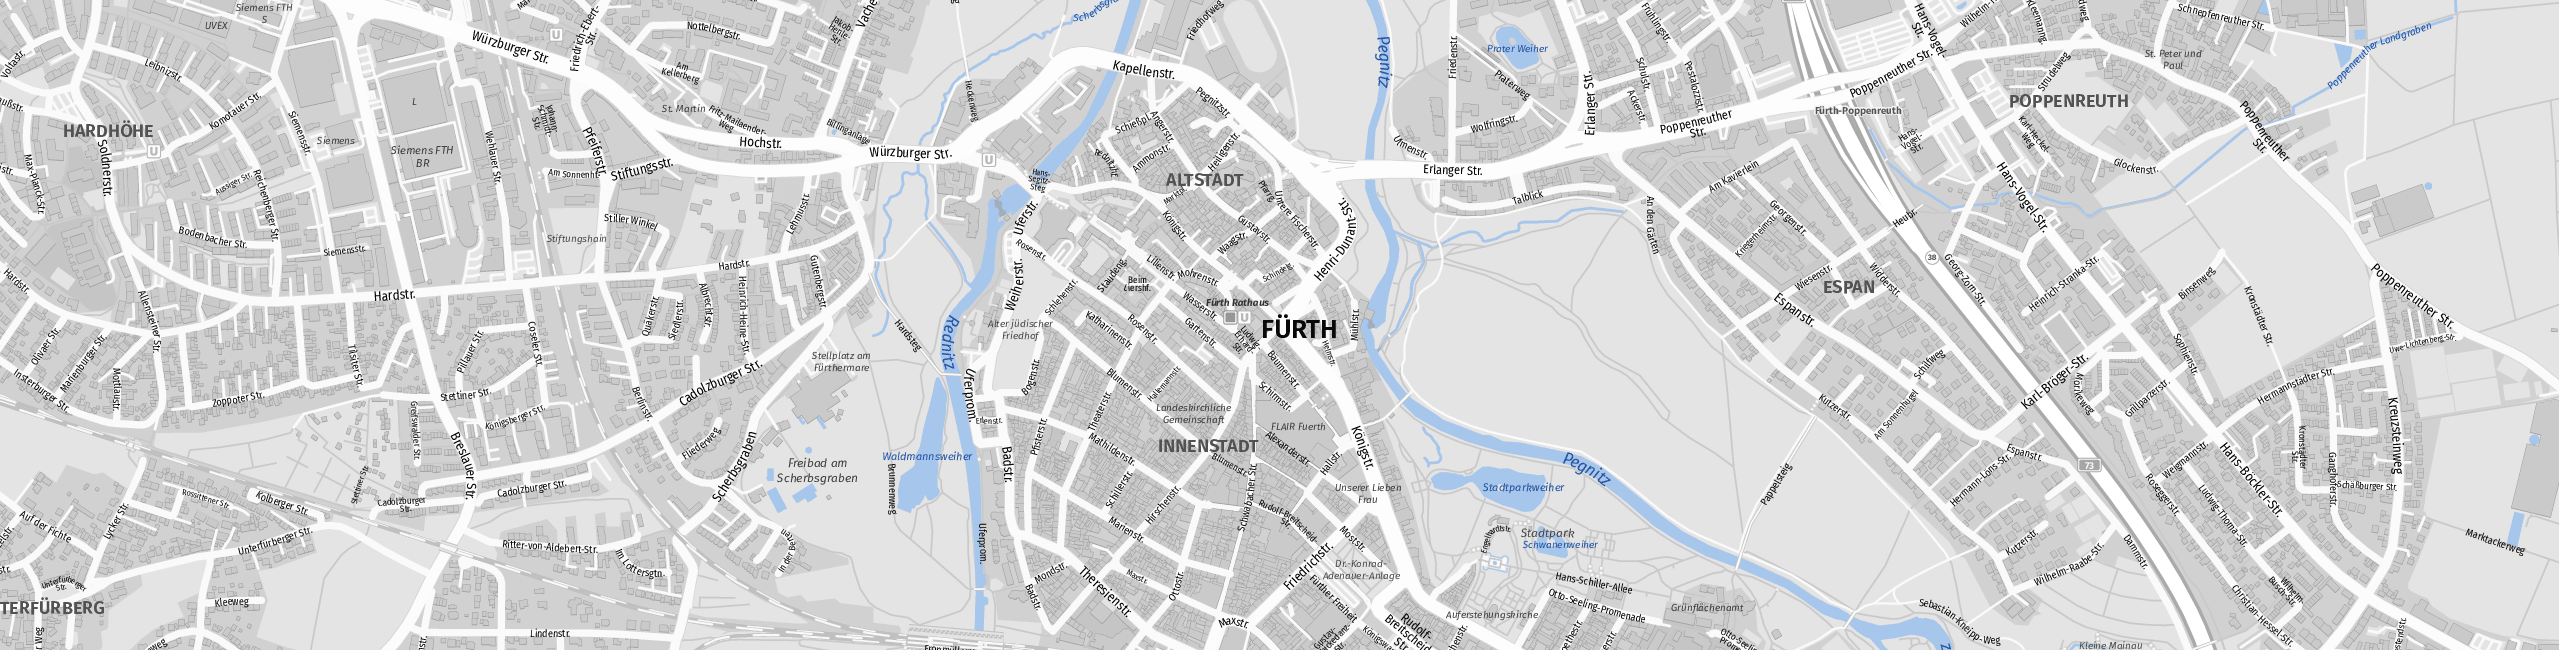 Stadtplan Fürth zum Downloaden.